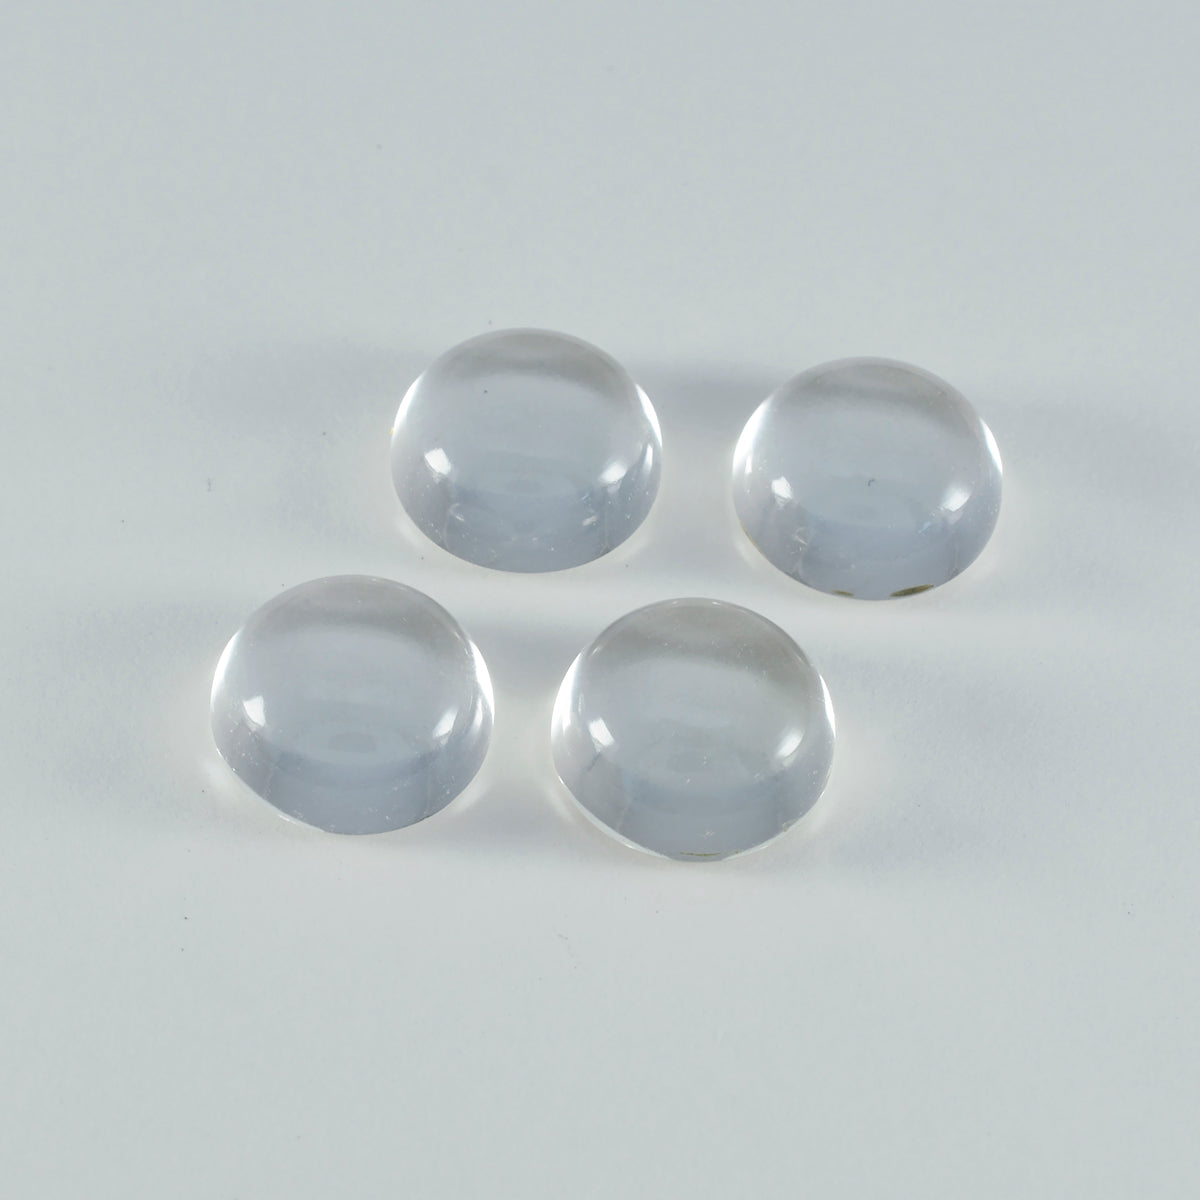 riyogems 1 шт. белый кристалл кварца кабошон 9x9 мм круглая форма камень хорошего качества